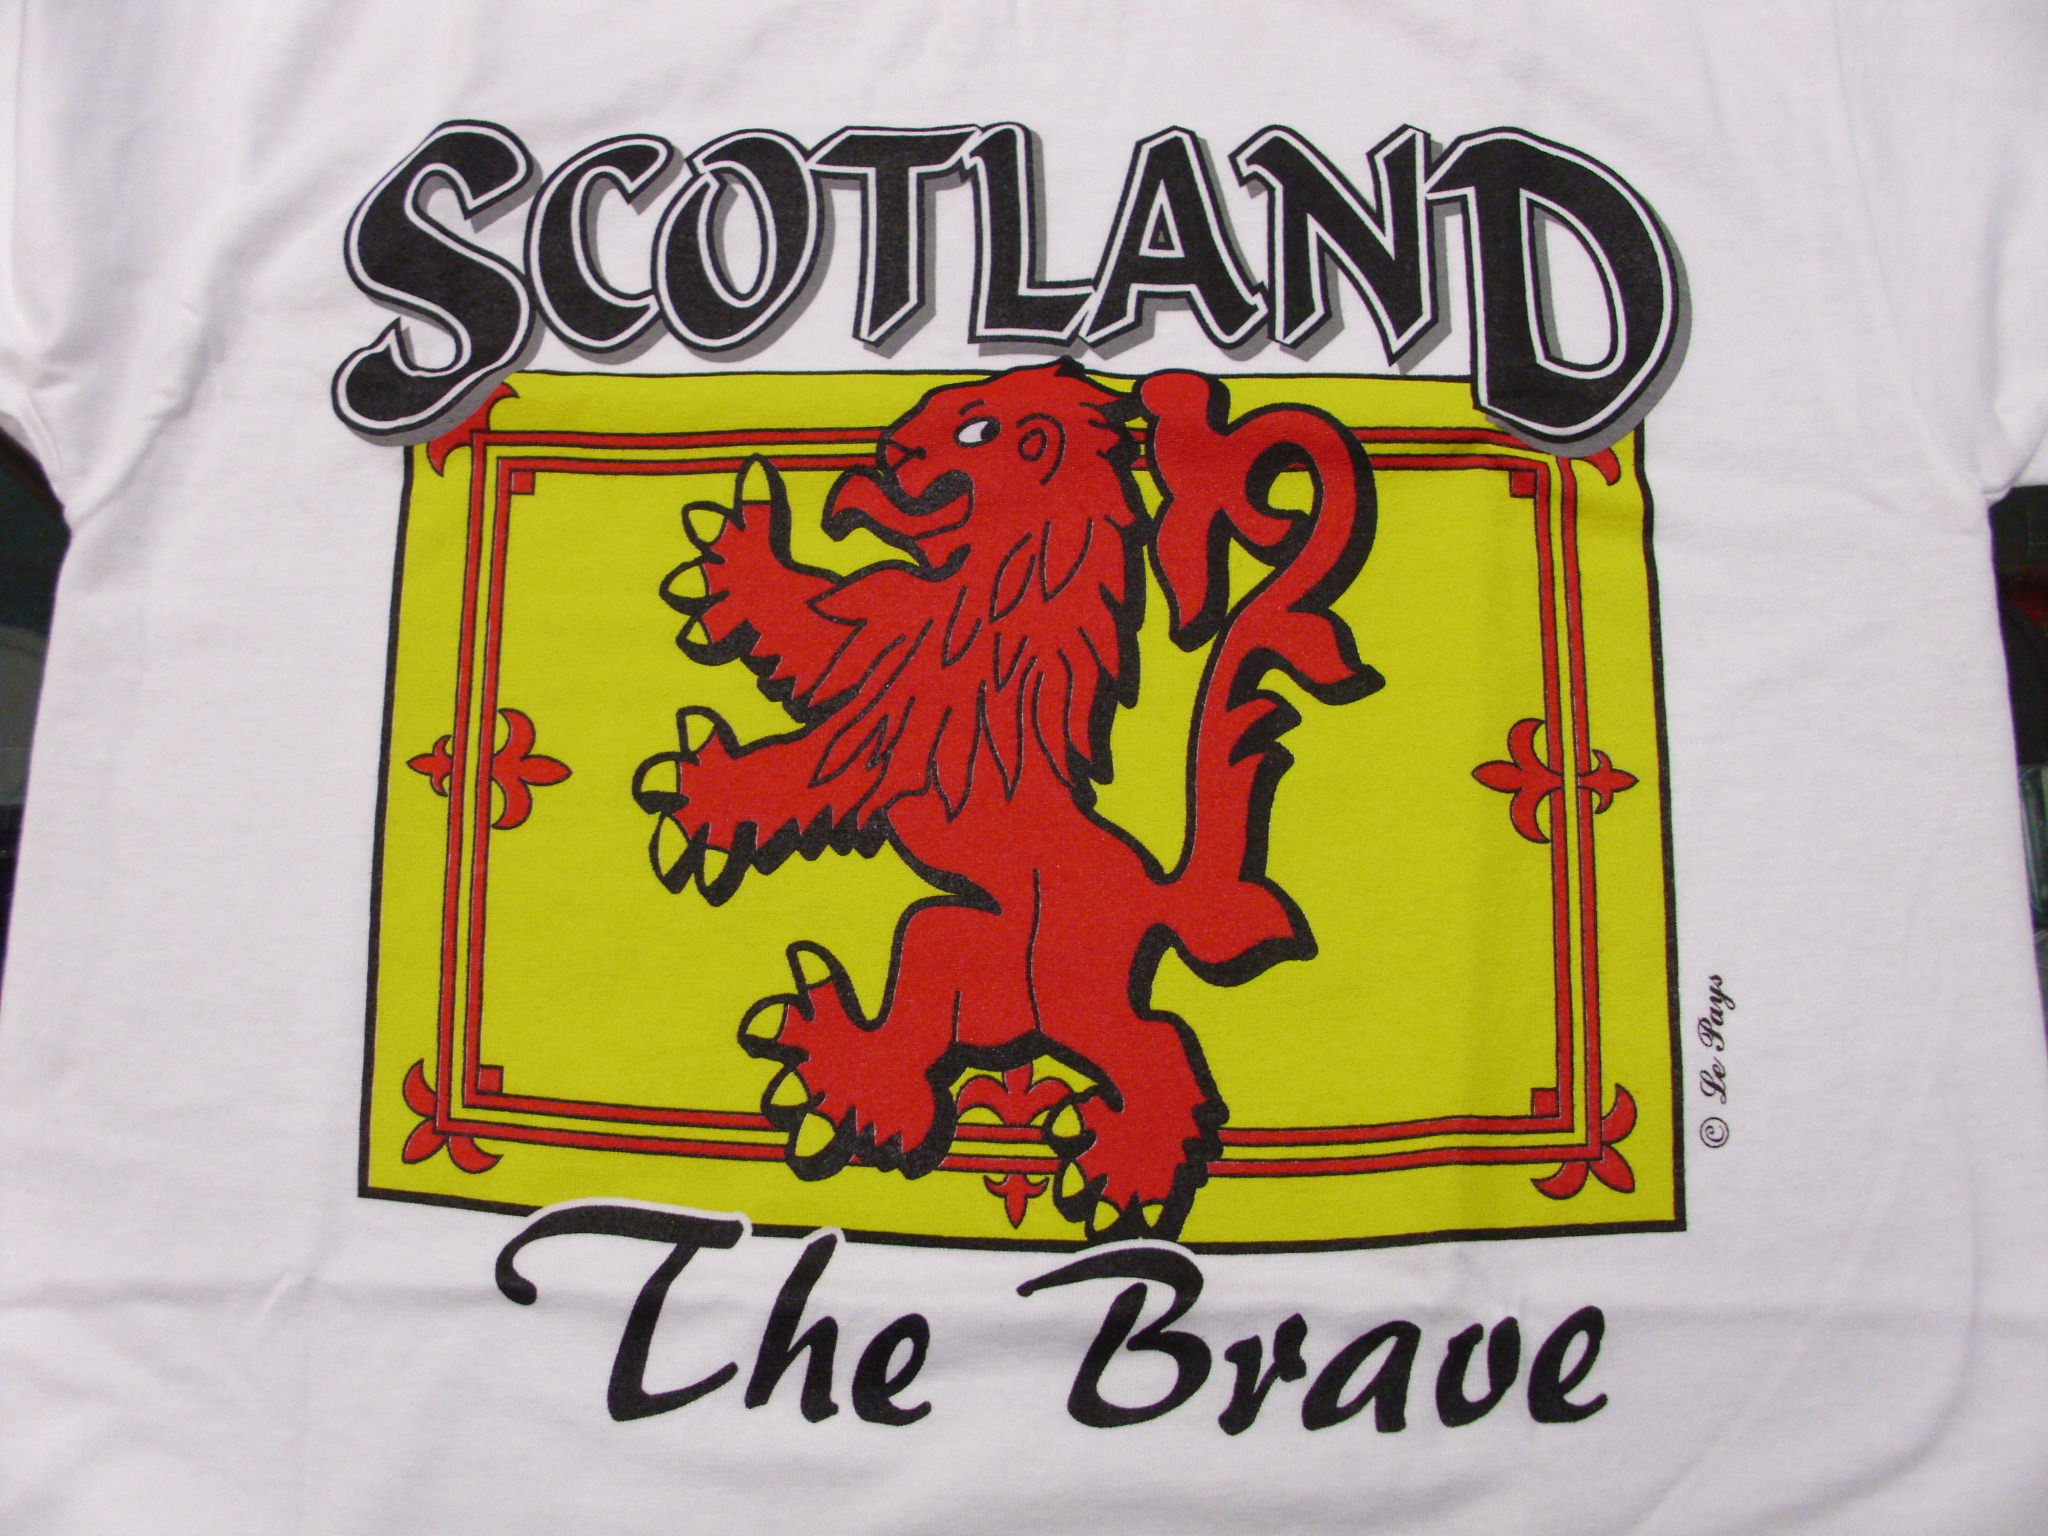 hear scotland the brave